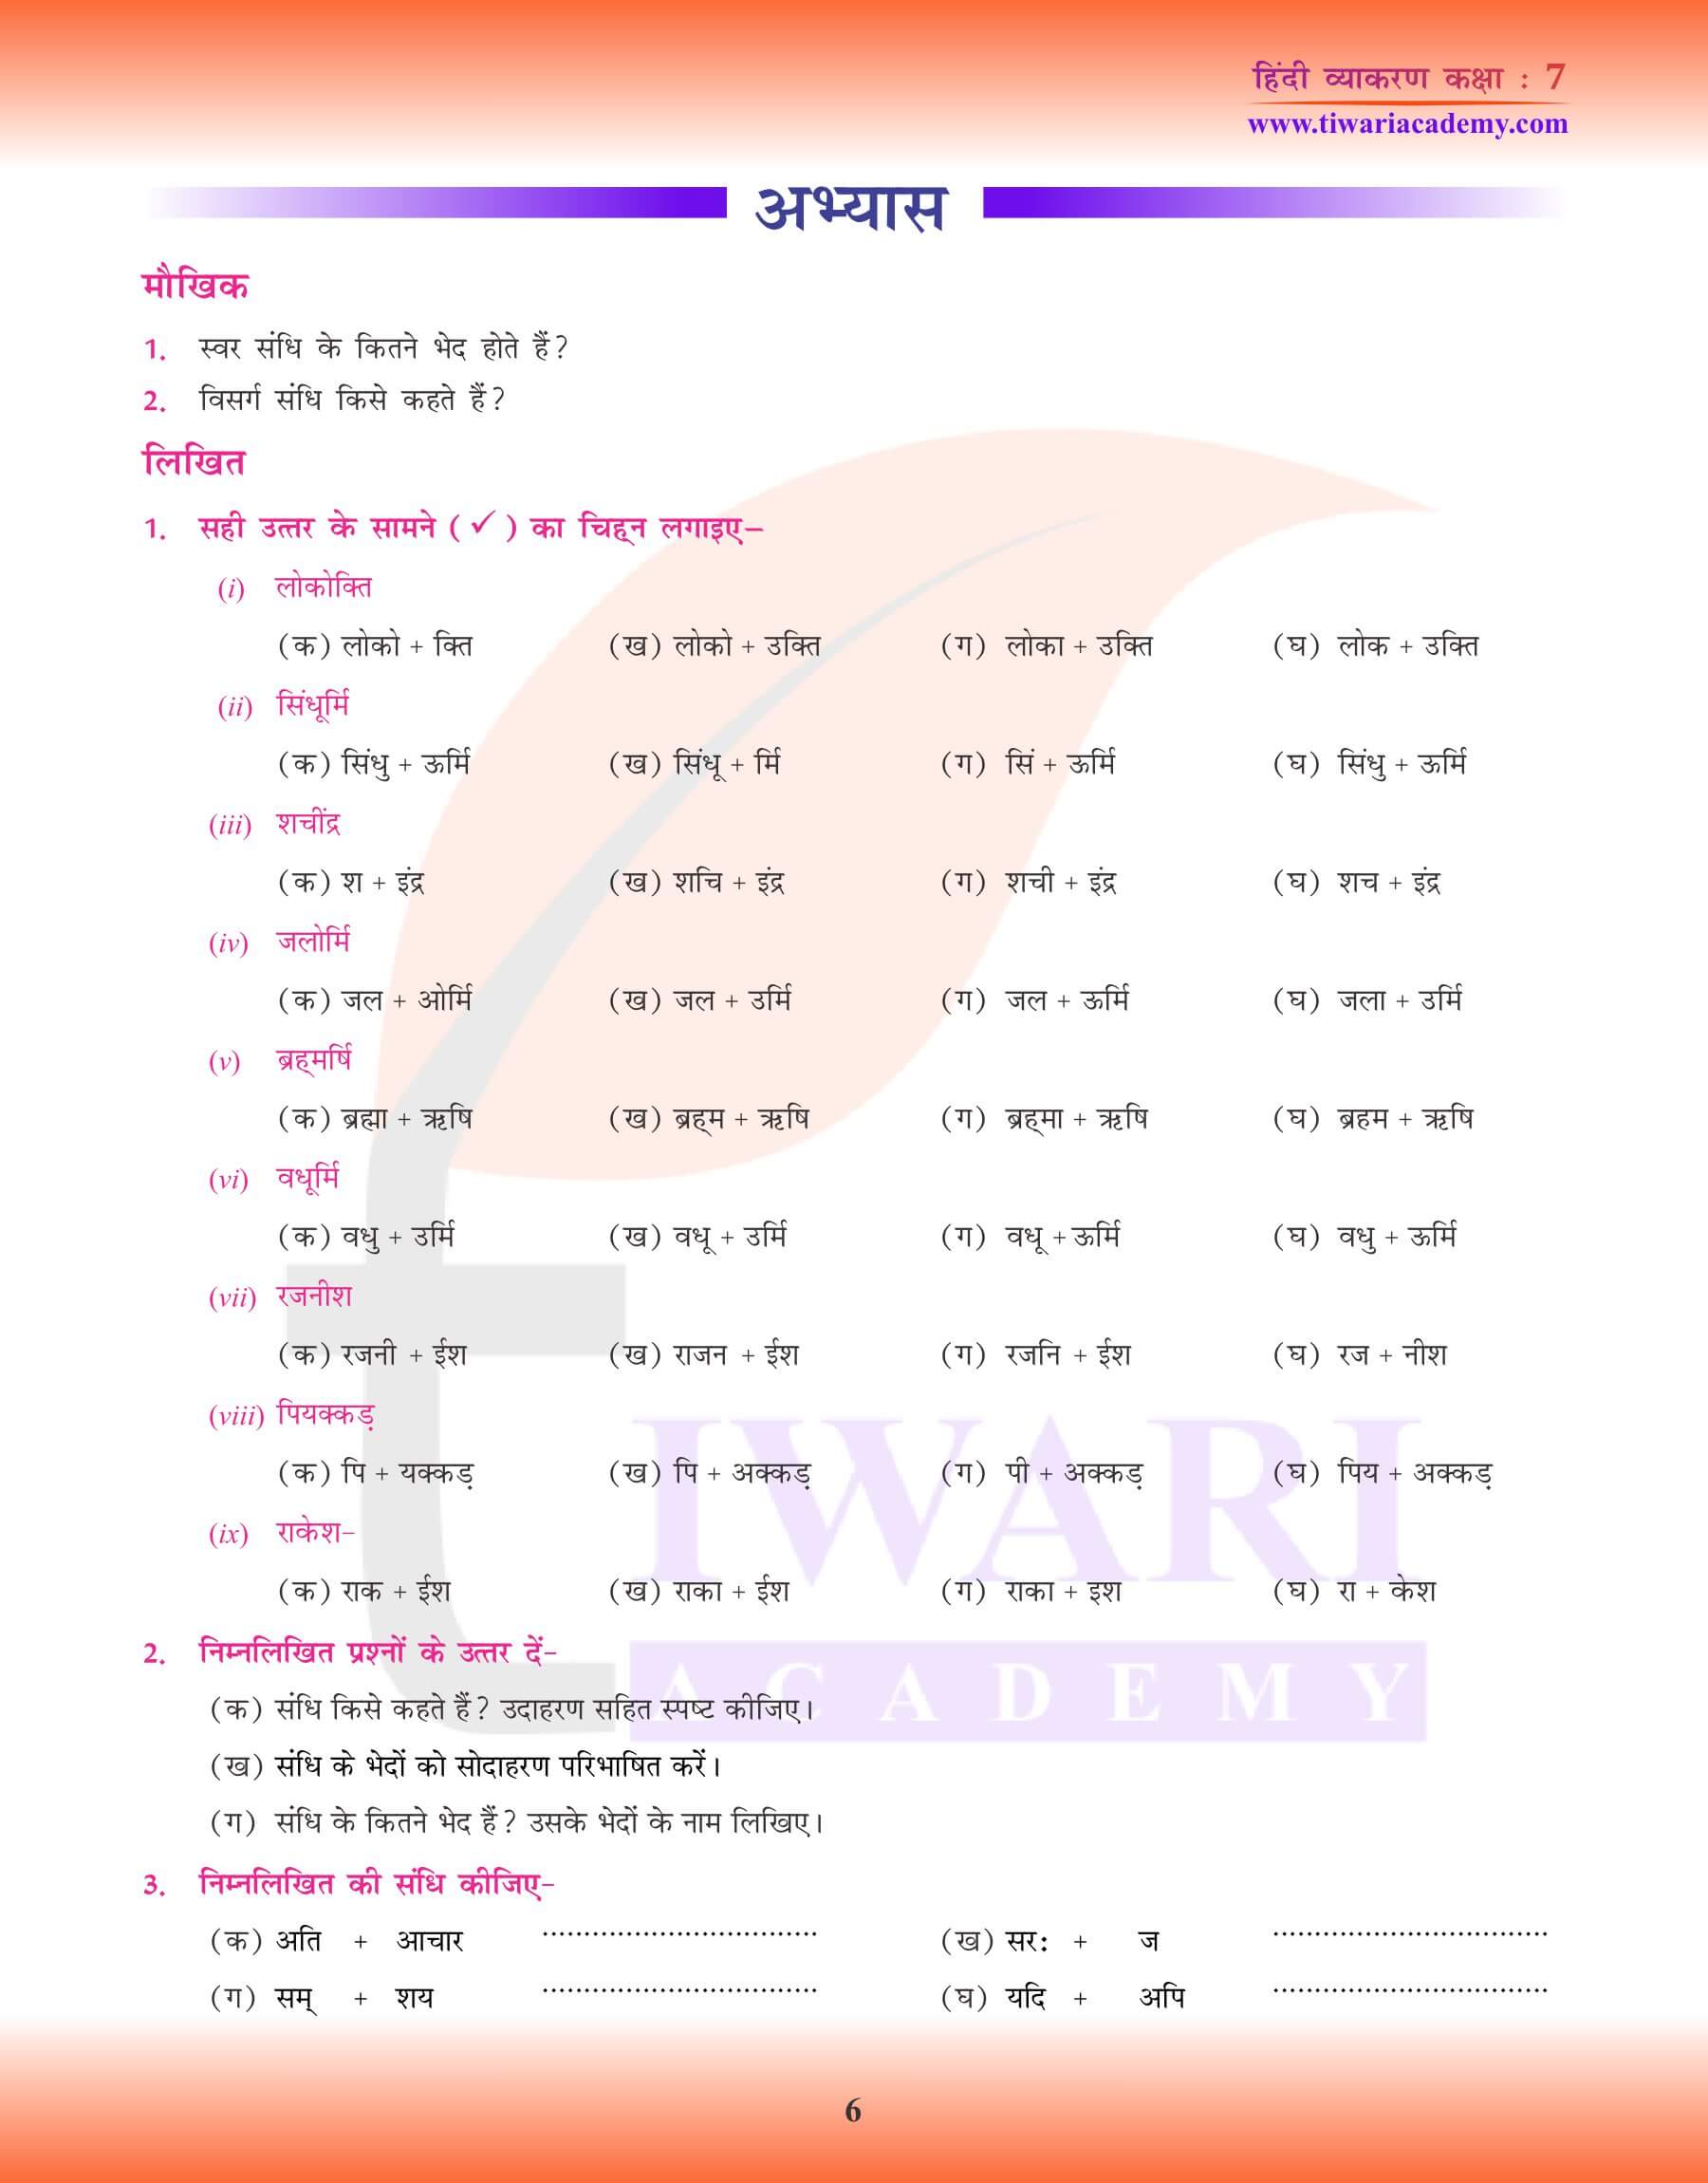 कक्षा 7 हिंदी व्याकरण पाठ 3 संधि के लिए अभ्यास